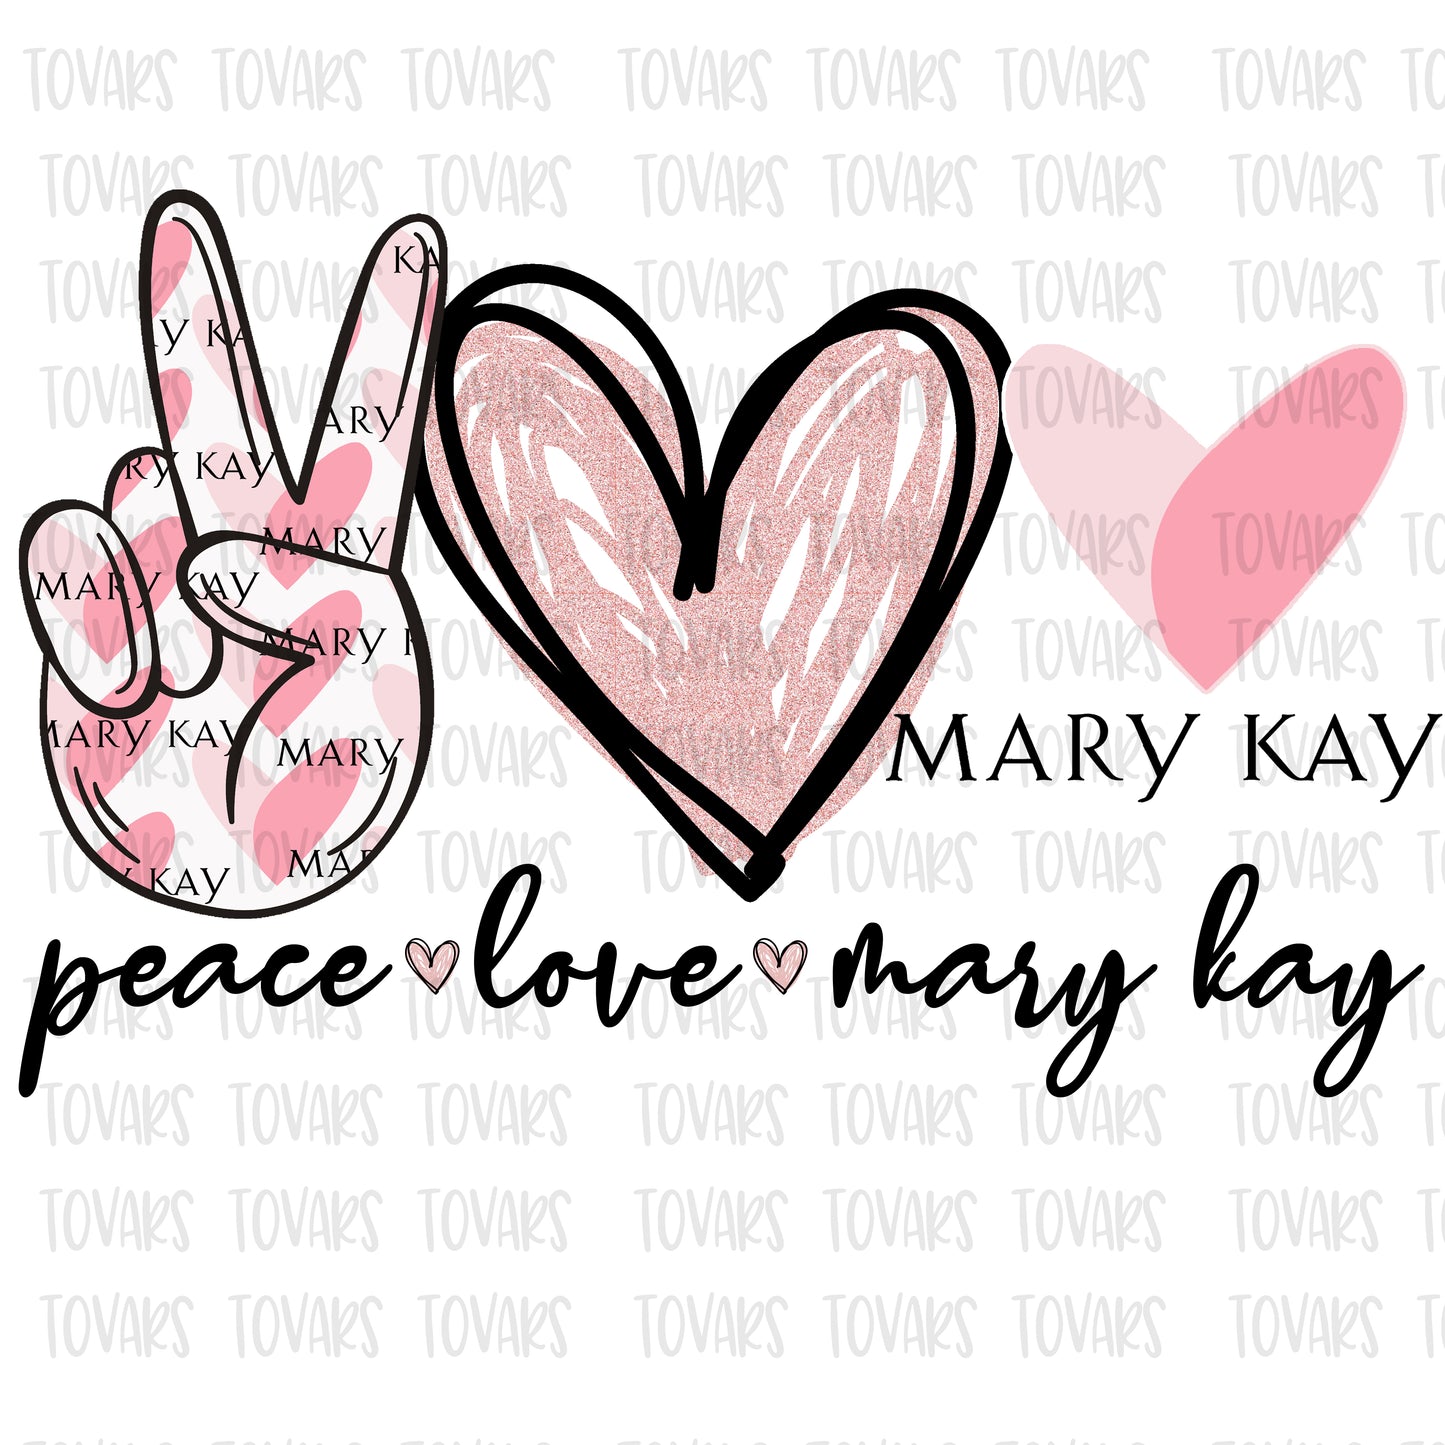 Peace love Mary kay